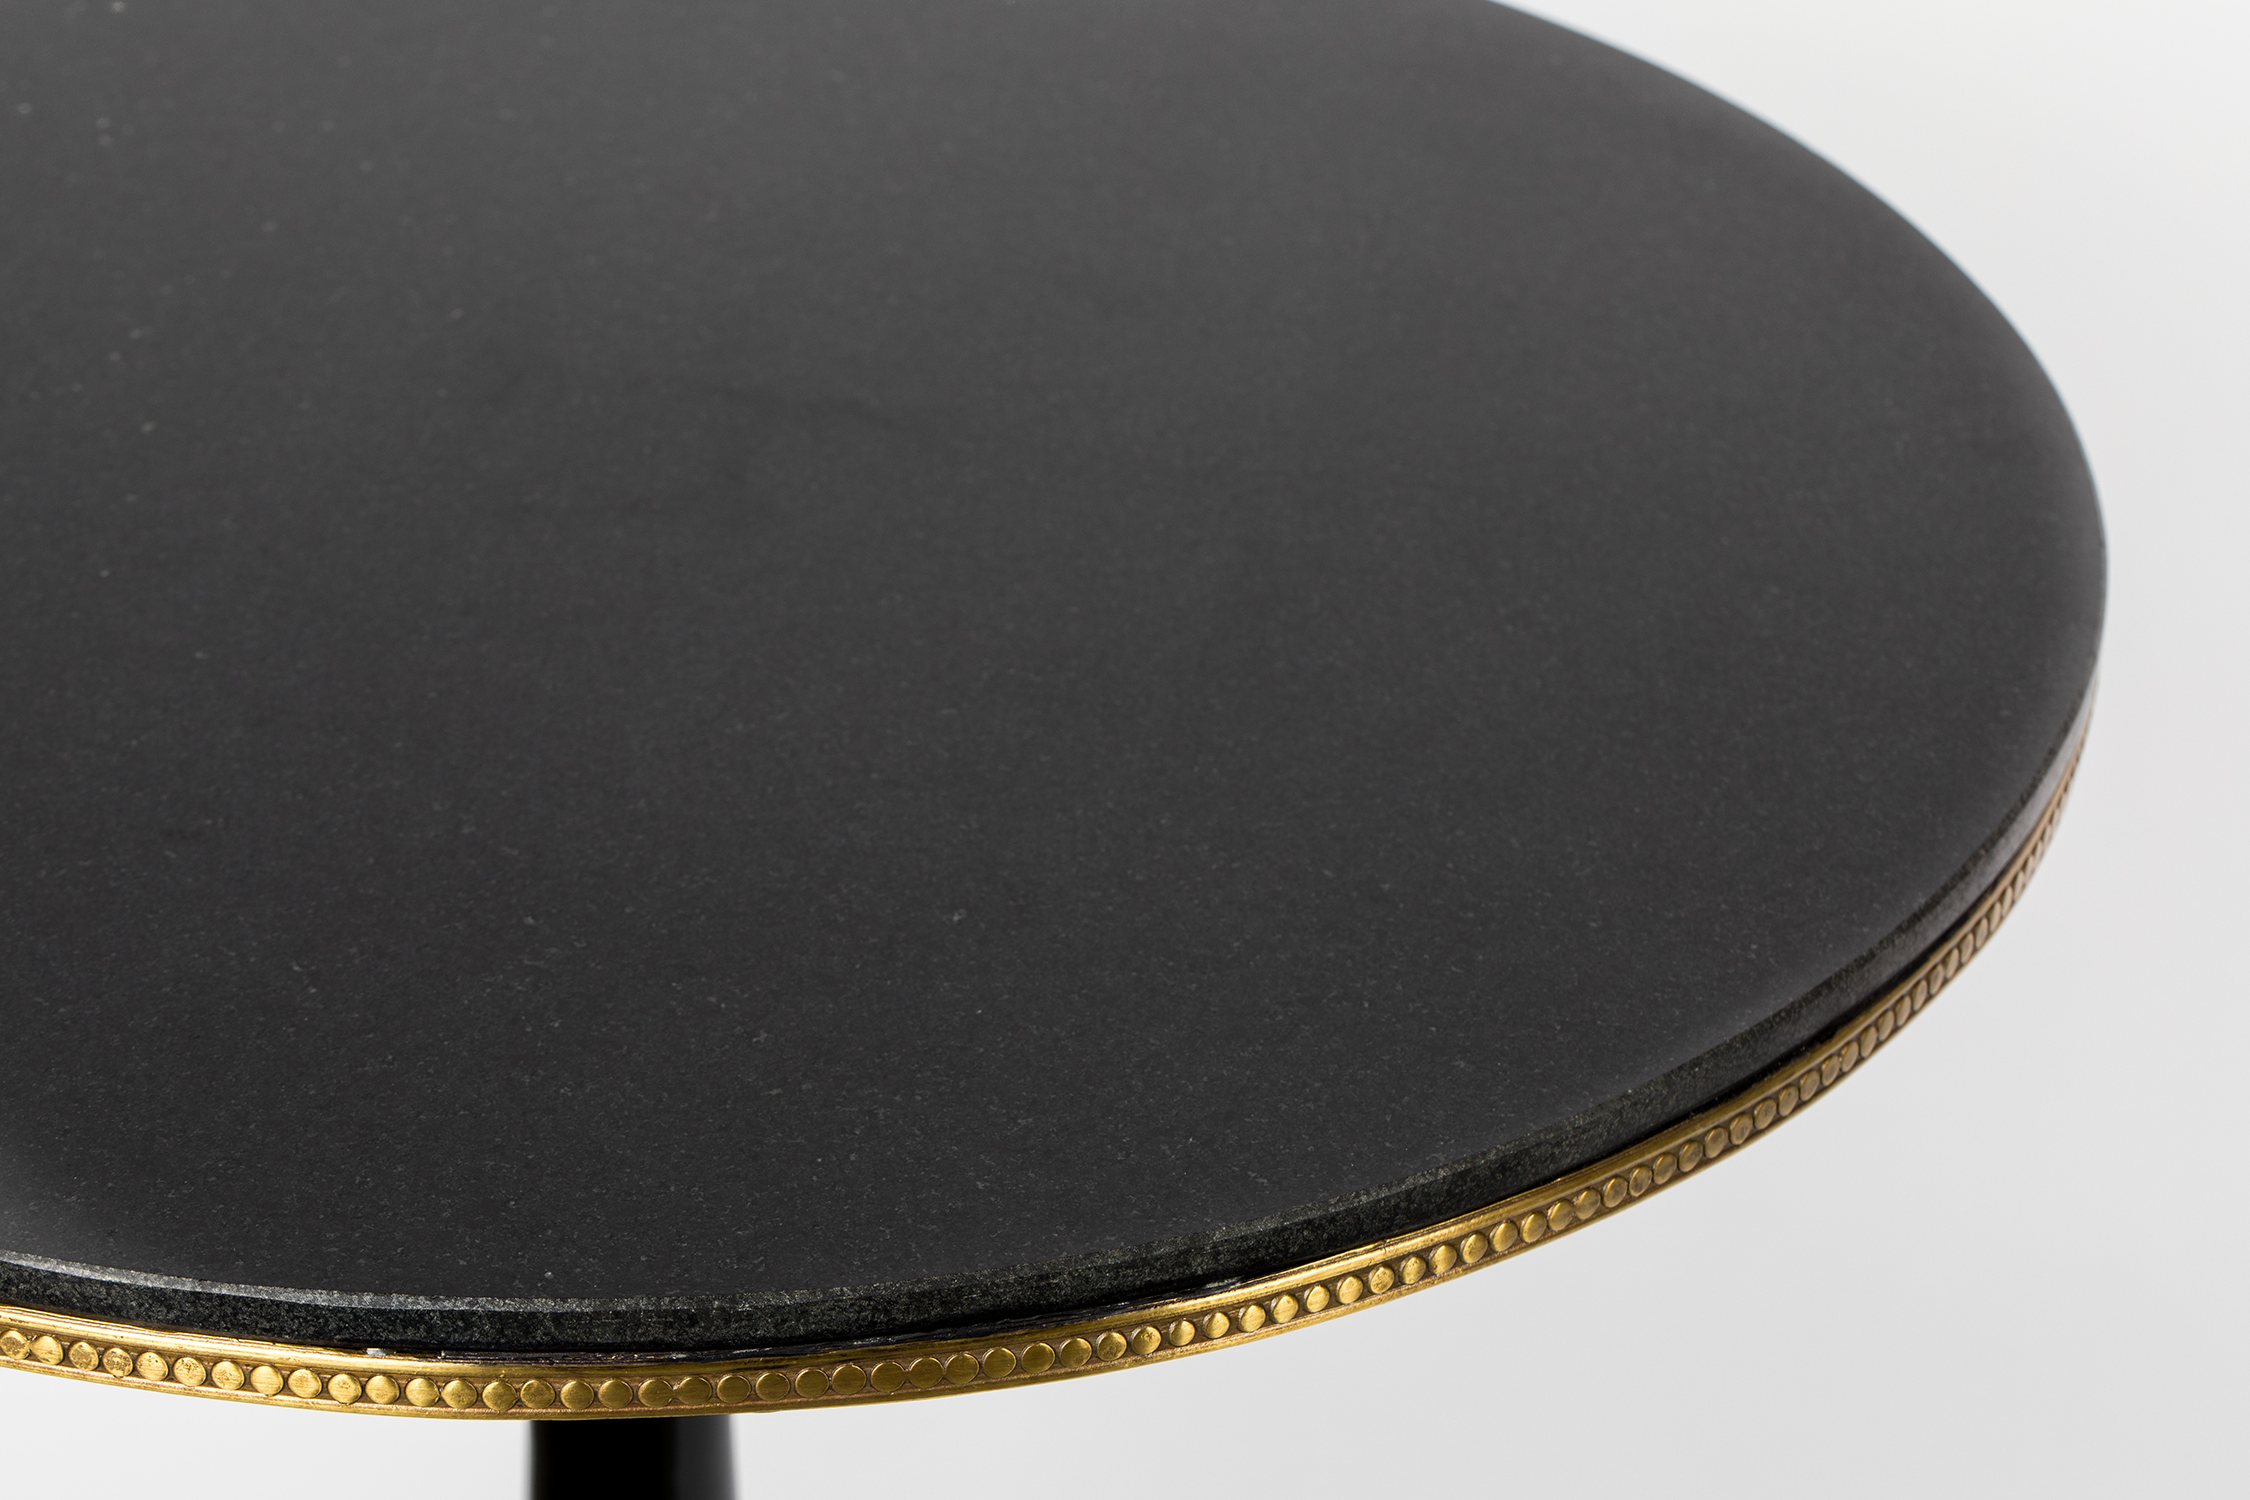 OWN THE GLOW ROUND Tisch in Schwarz präsentiert im Onlineshop von KAQTU Design AG. Esstisch ist von Bold Monkey